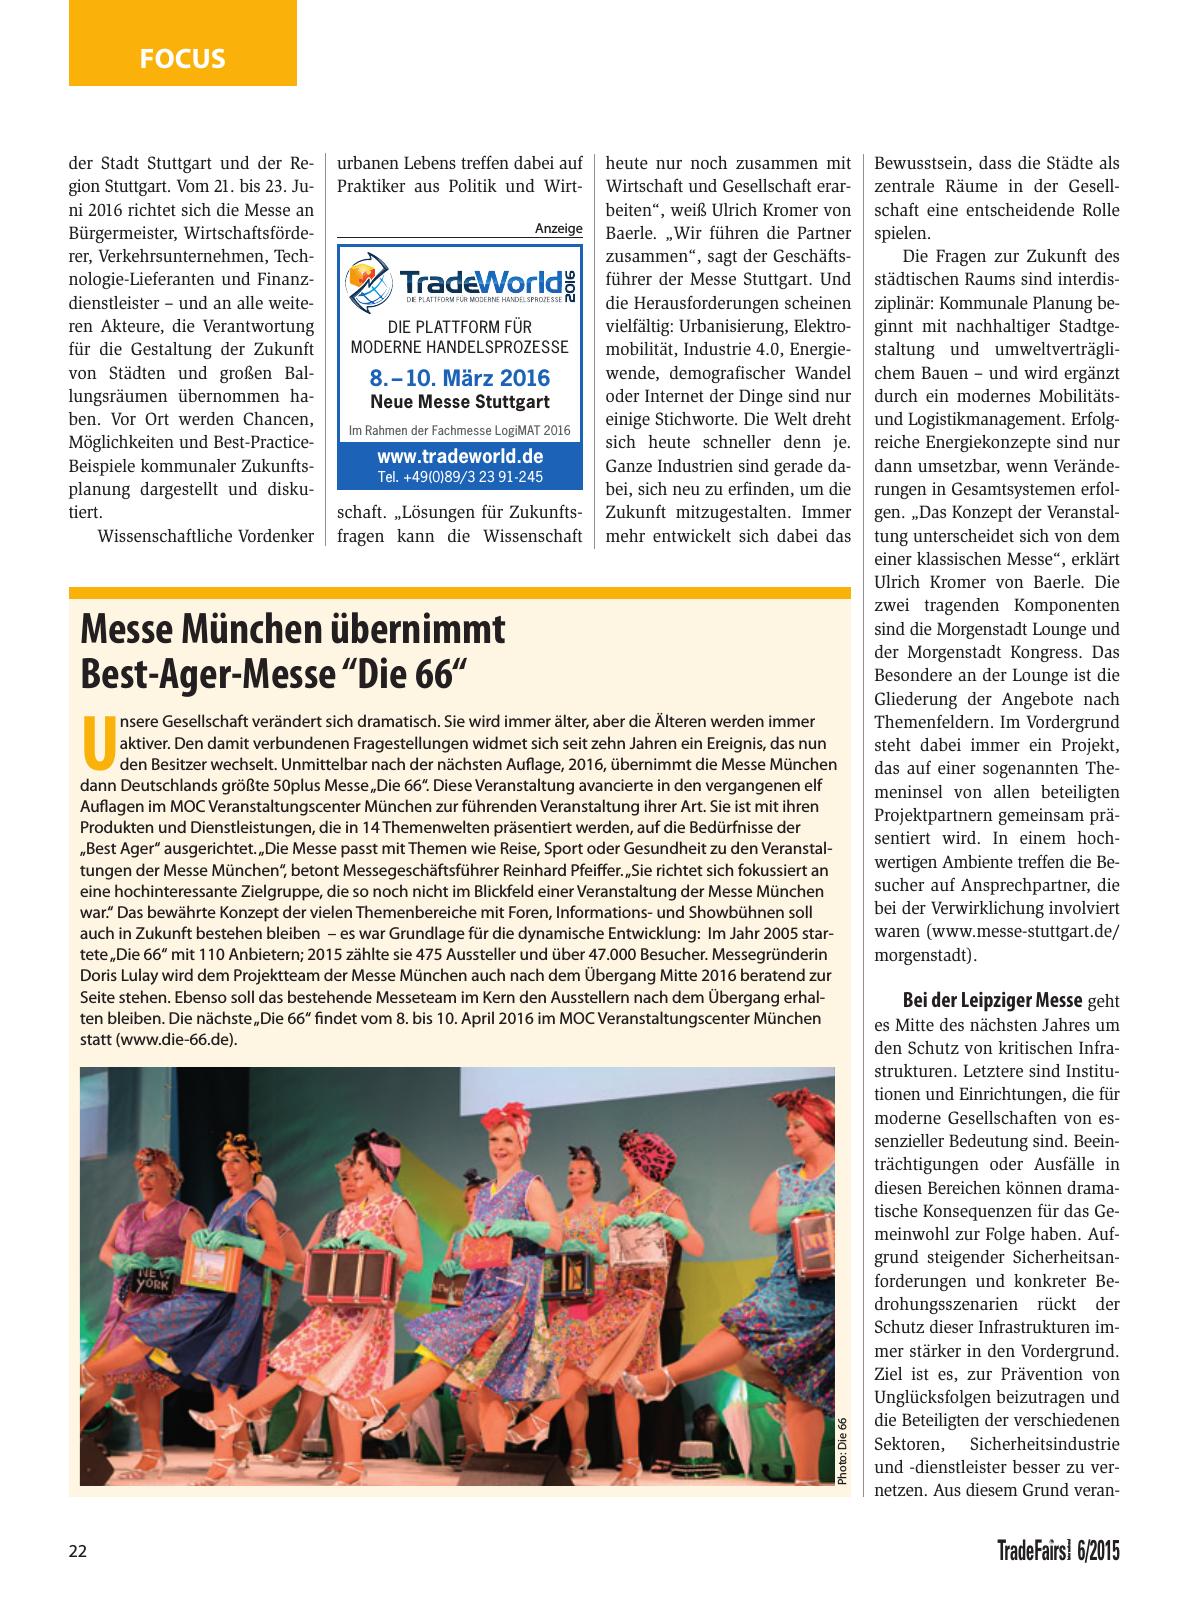 Vorschau TFI Trade-Fairs-International 06/2015 Seite 22